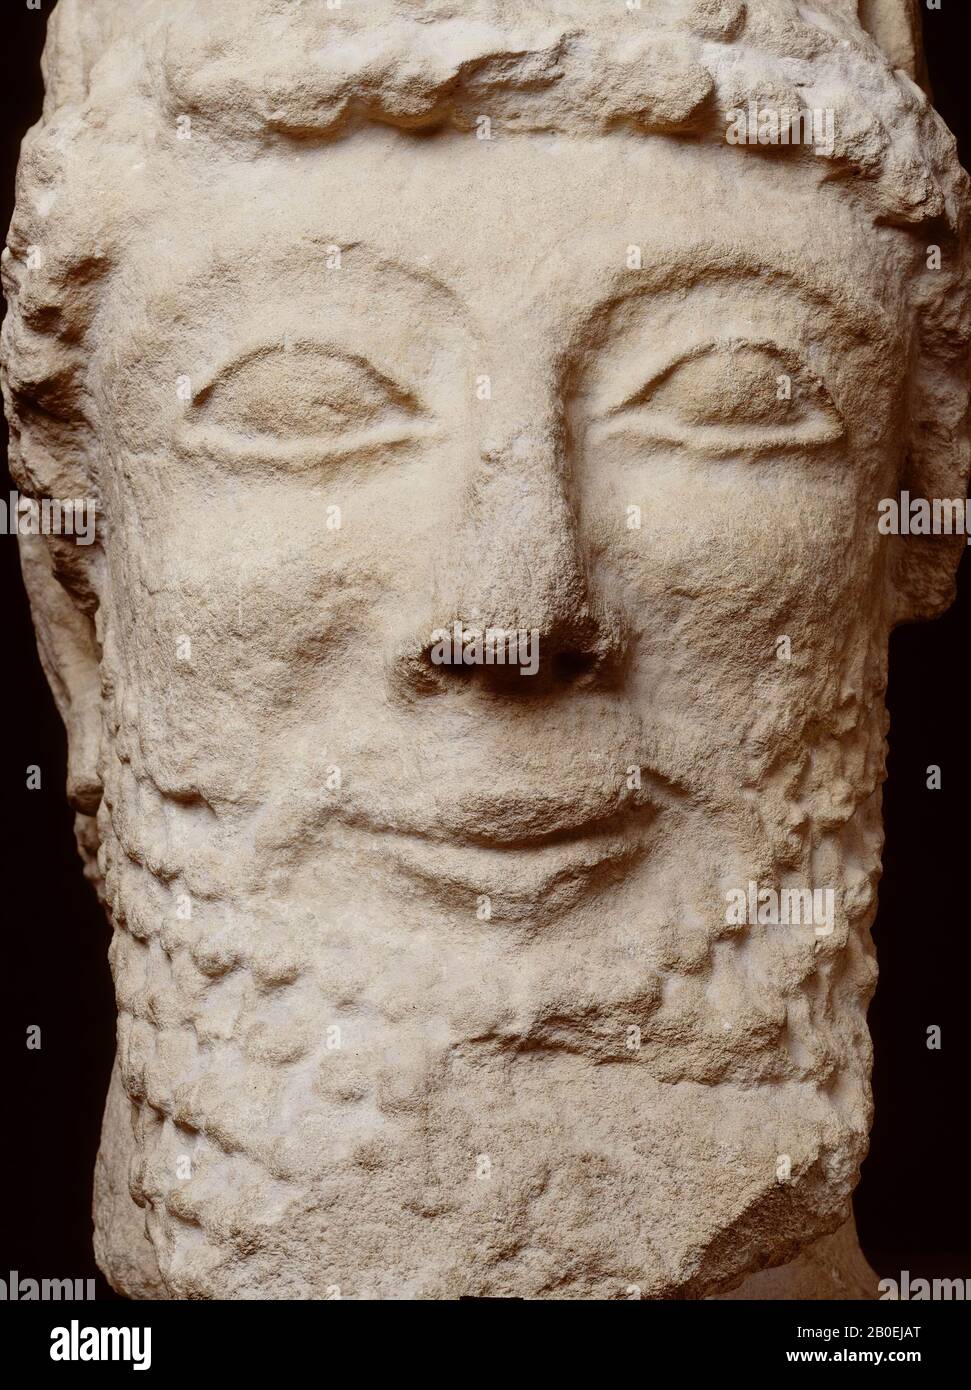 Testa quadrata con un sorriso arcaico. Forse l'origine è ancora Cipro, perché la testa è stata acquistata a Cipro., testa, Cipro testa degli uomini, calcare, 38 cm, 40 kg, classico 475-460 a.C., sconosciuto Foto Stock